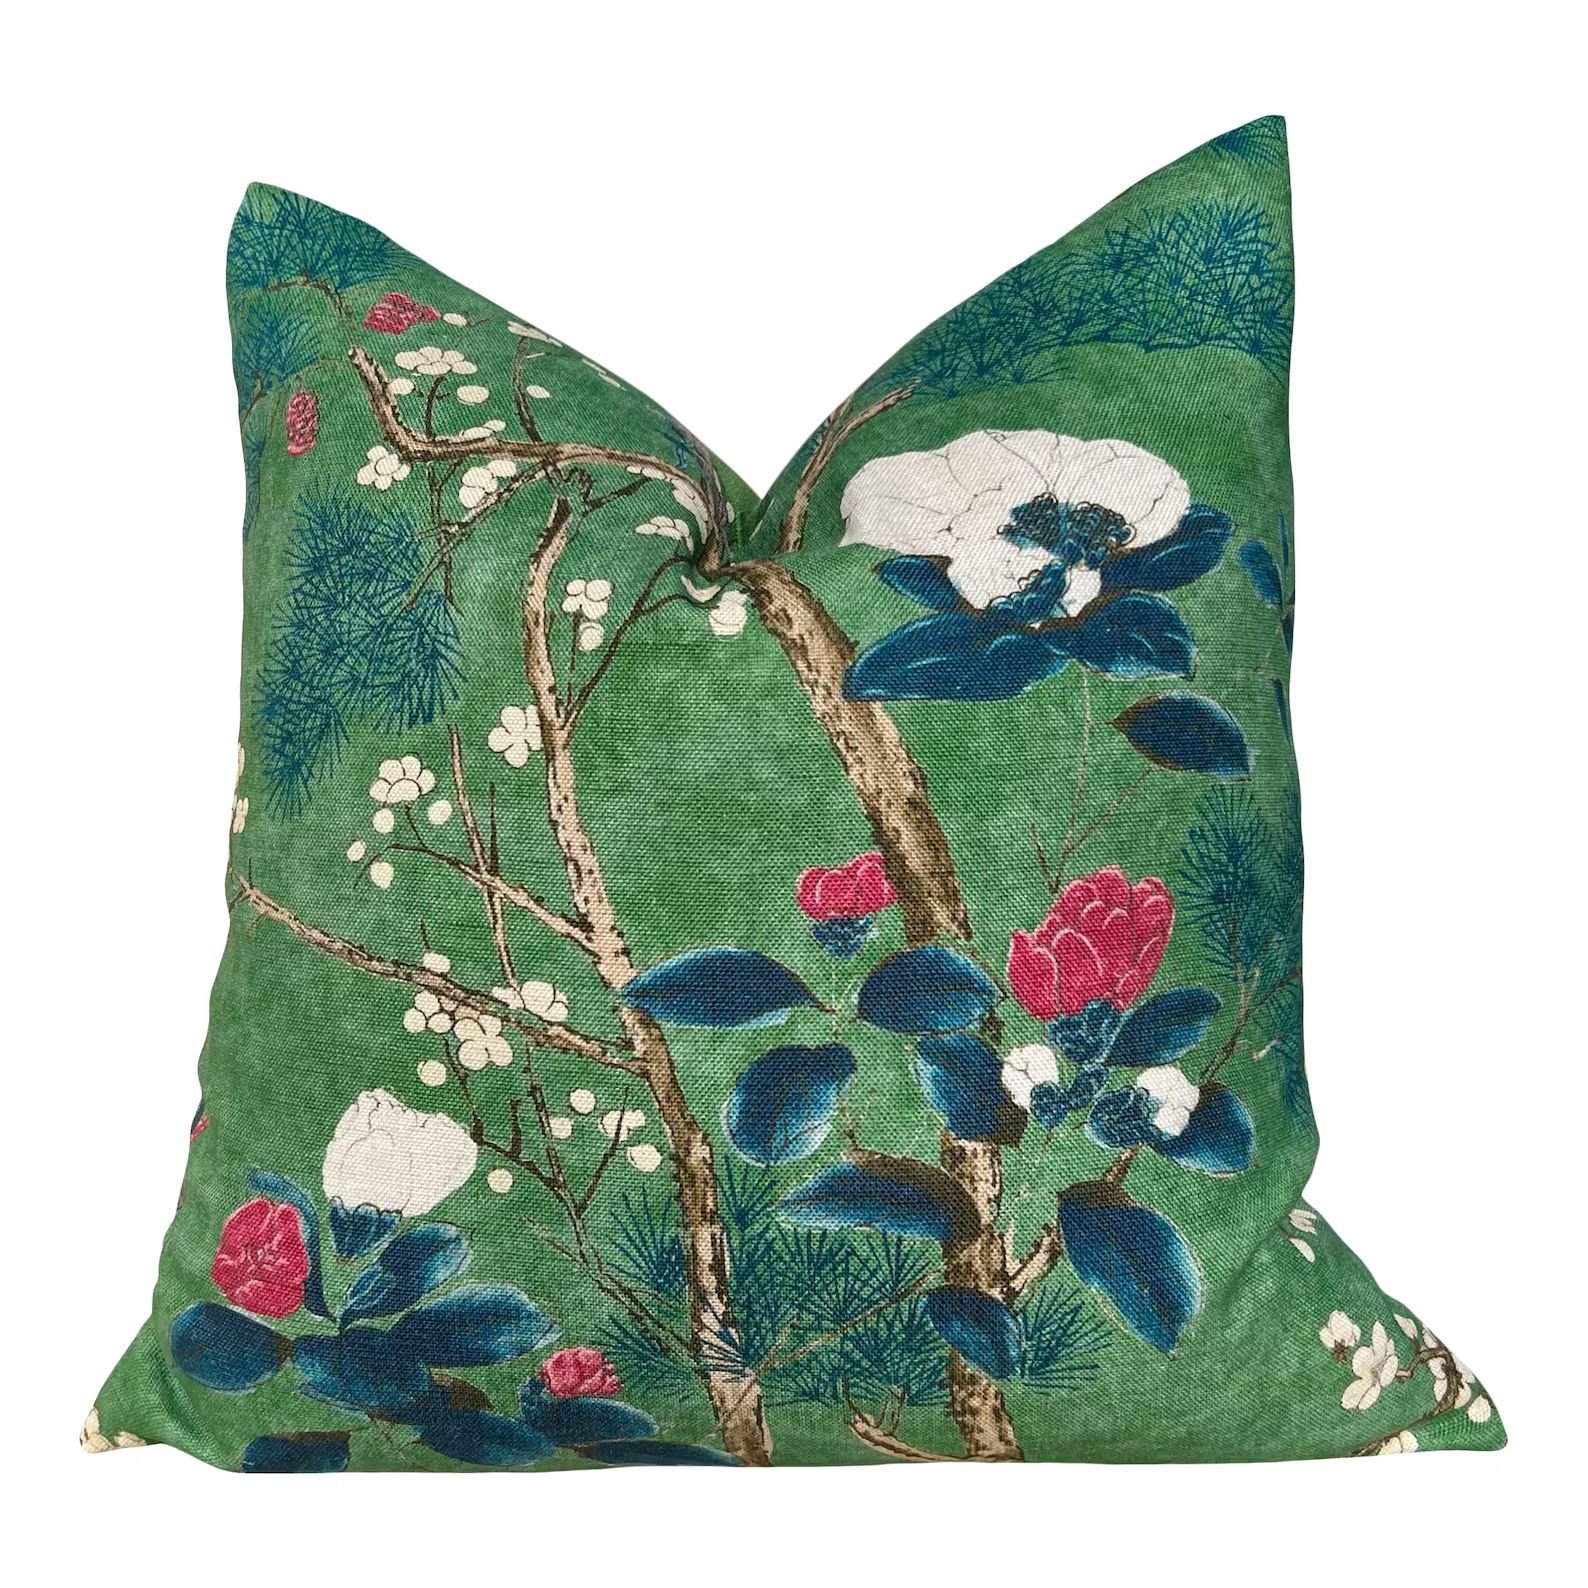 Katsura Pillow in Emerald Green. Designer Pillows, High End Floral Pillow Case, Euro Sham Cover, ... | Etsy (US)